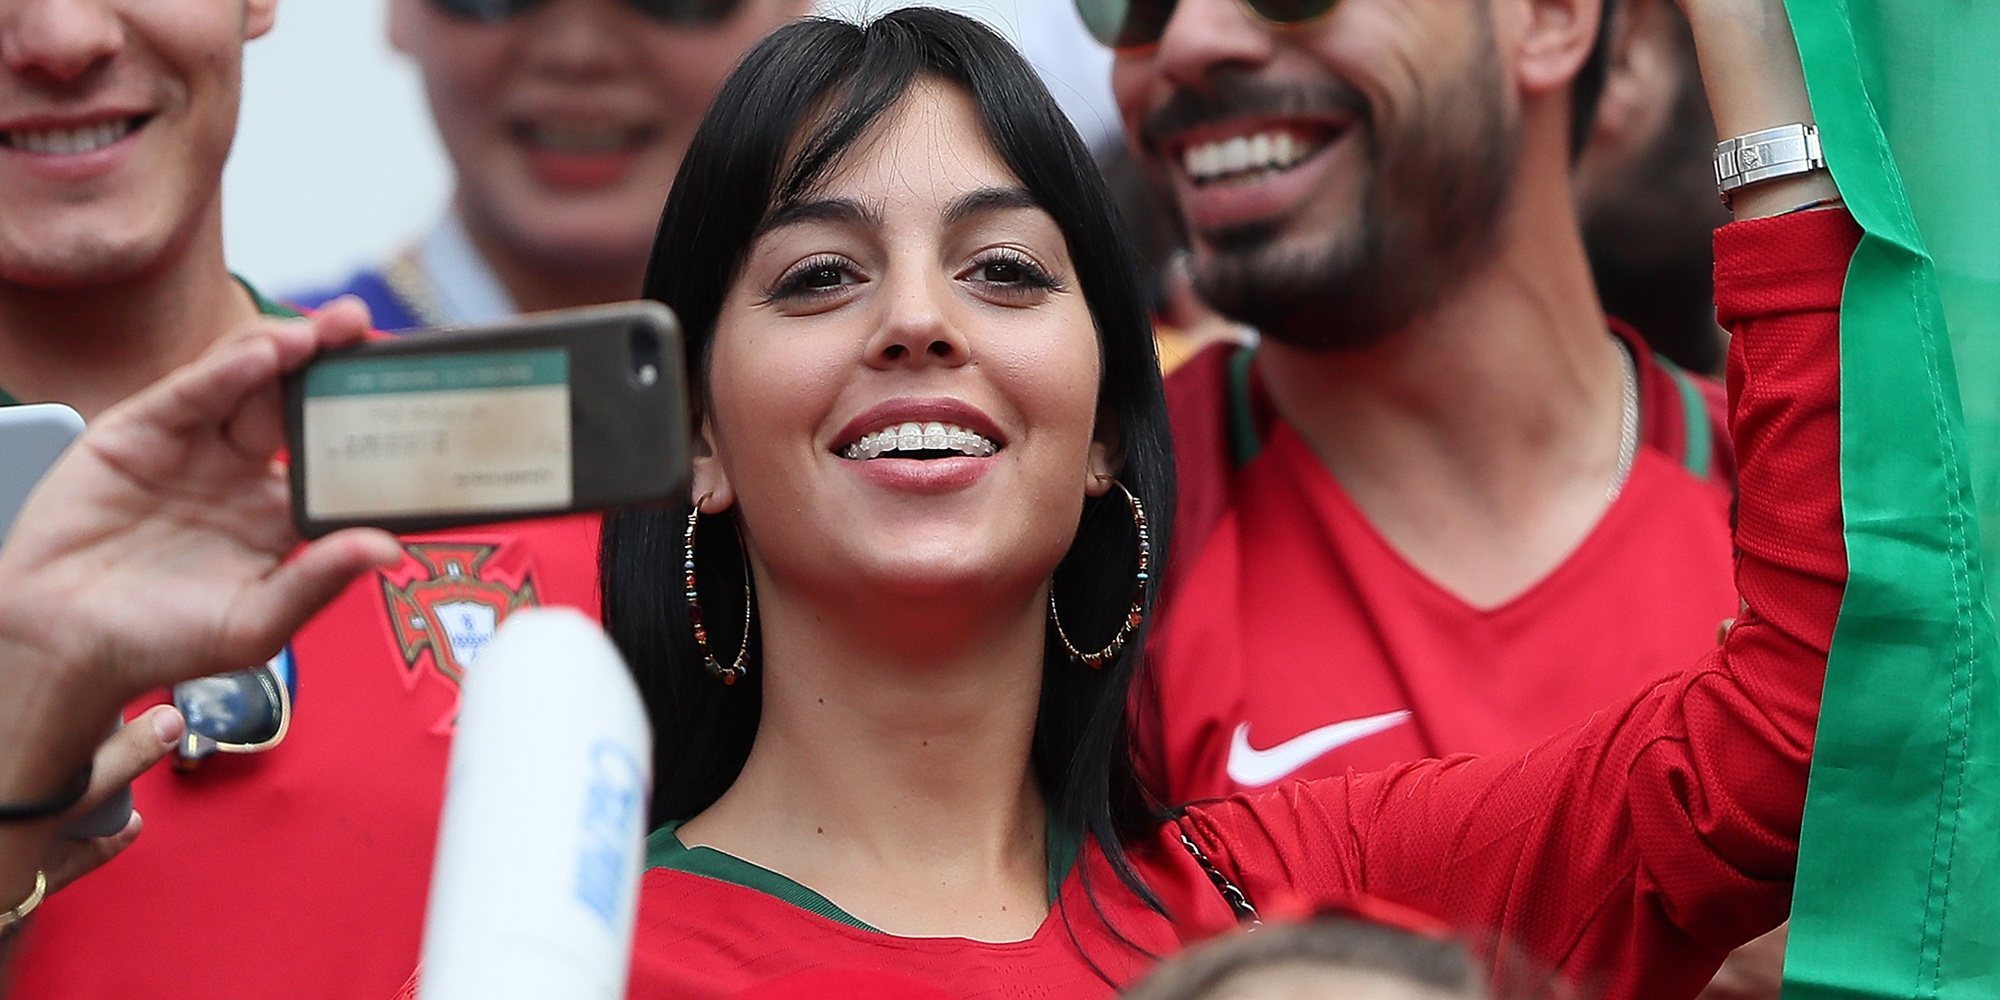 Georgina Rodríguez apoya a Cristiano Ronaldo en el Mundial de Rusia 2018 mientras desata rumores de compromiso